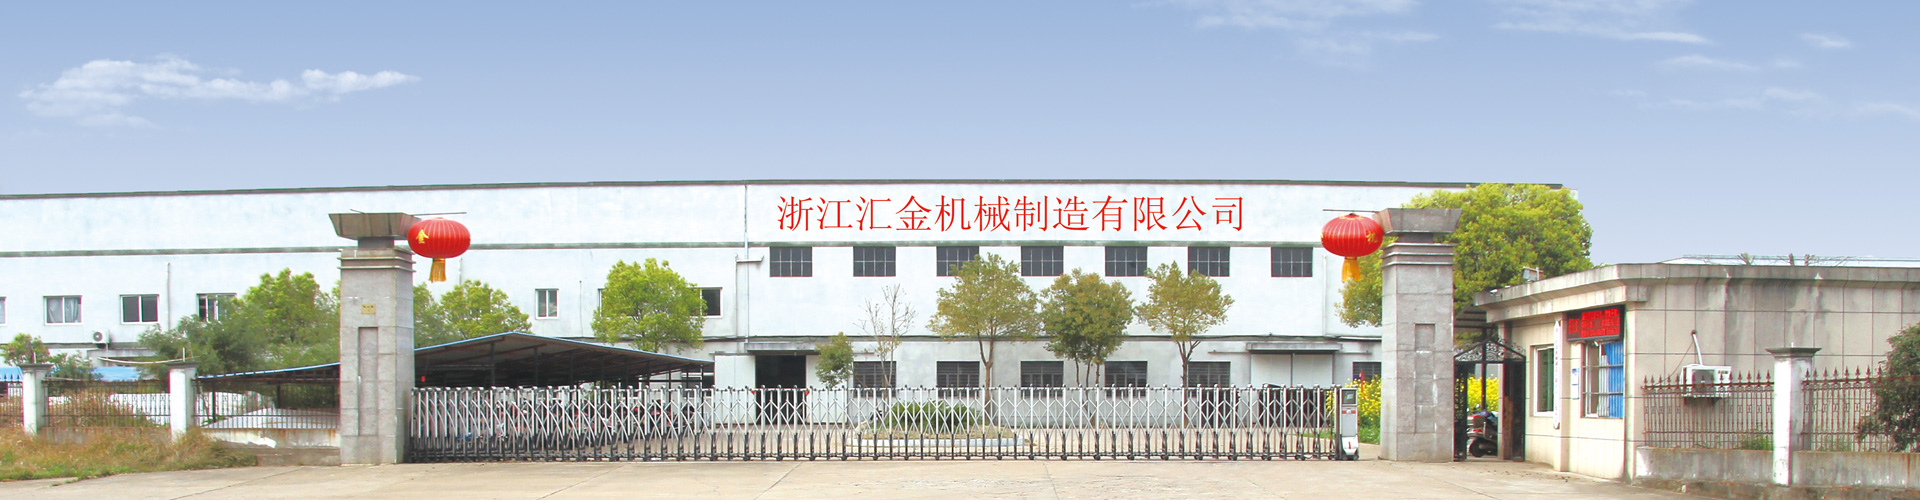 Zhejiang Huijin Machinery Manufacture Co., Ltd. 27 